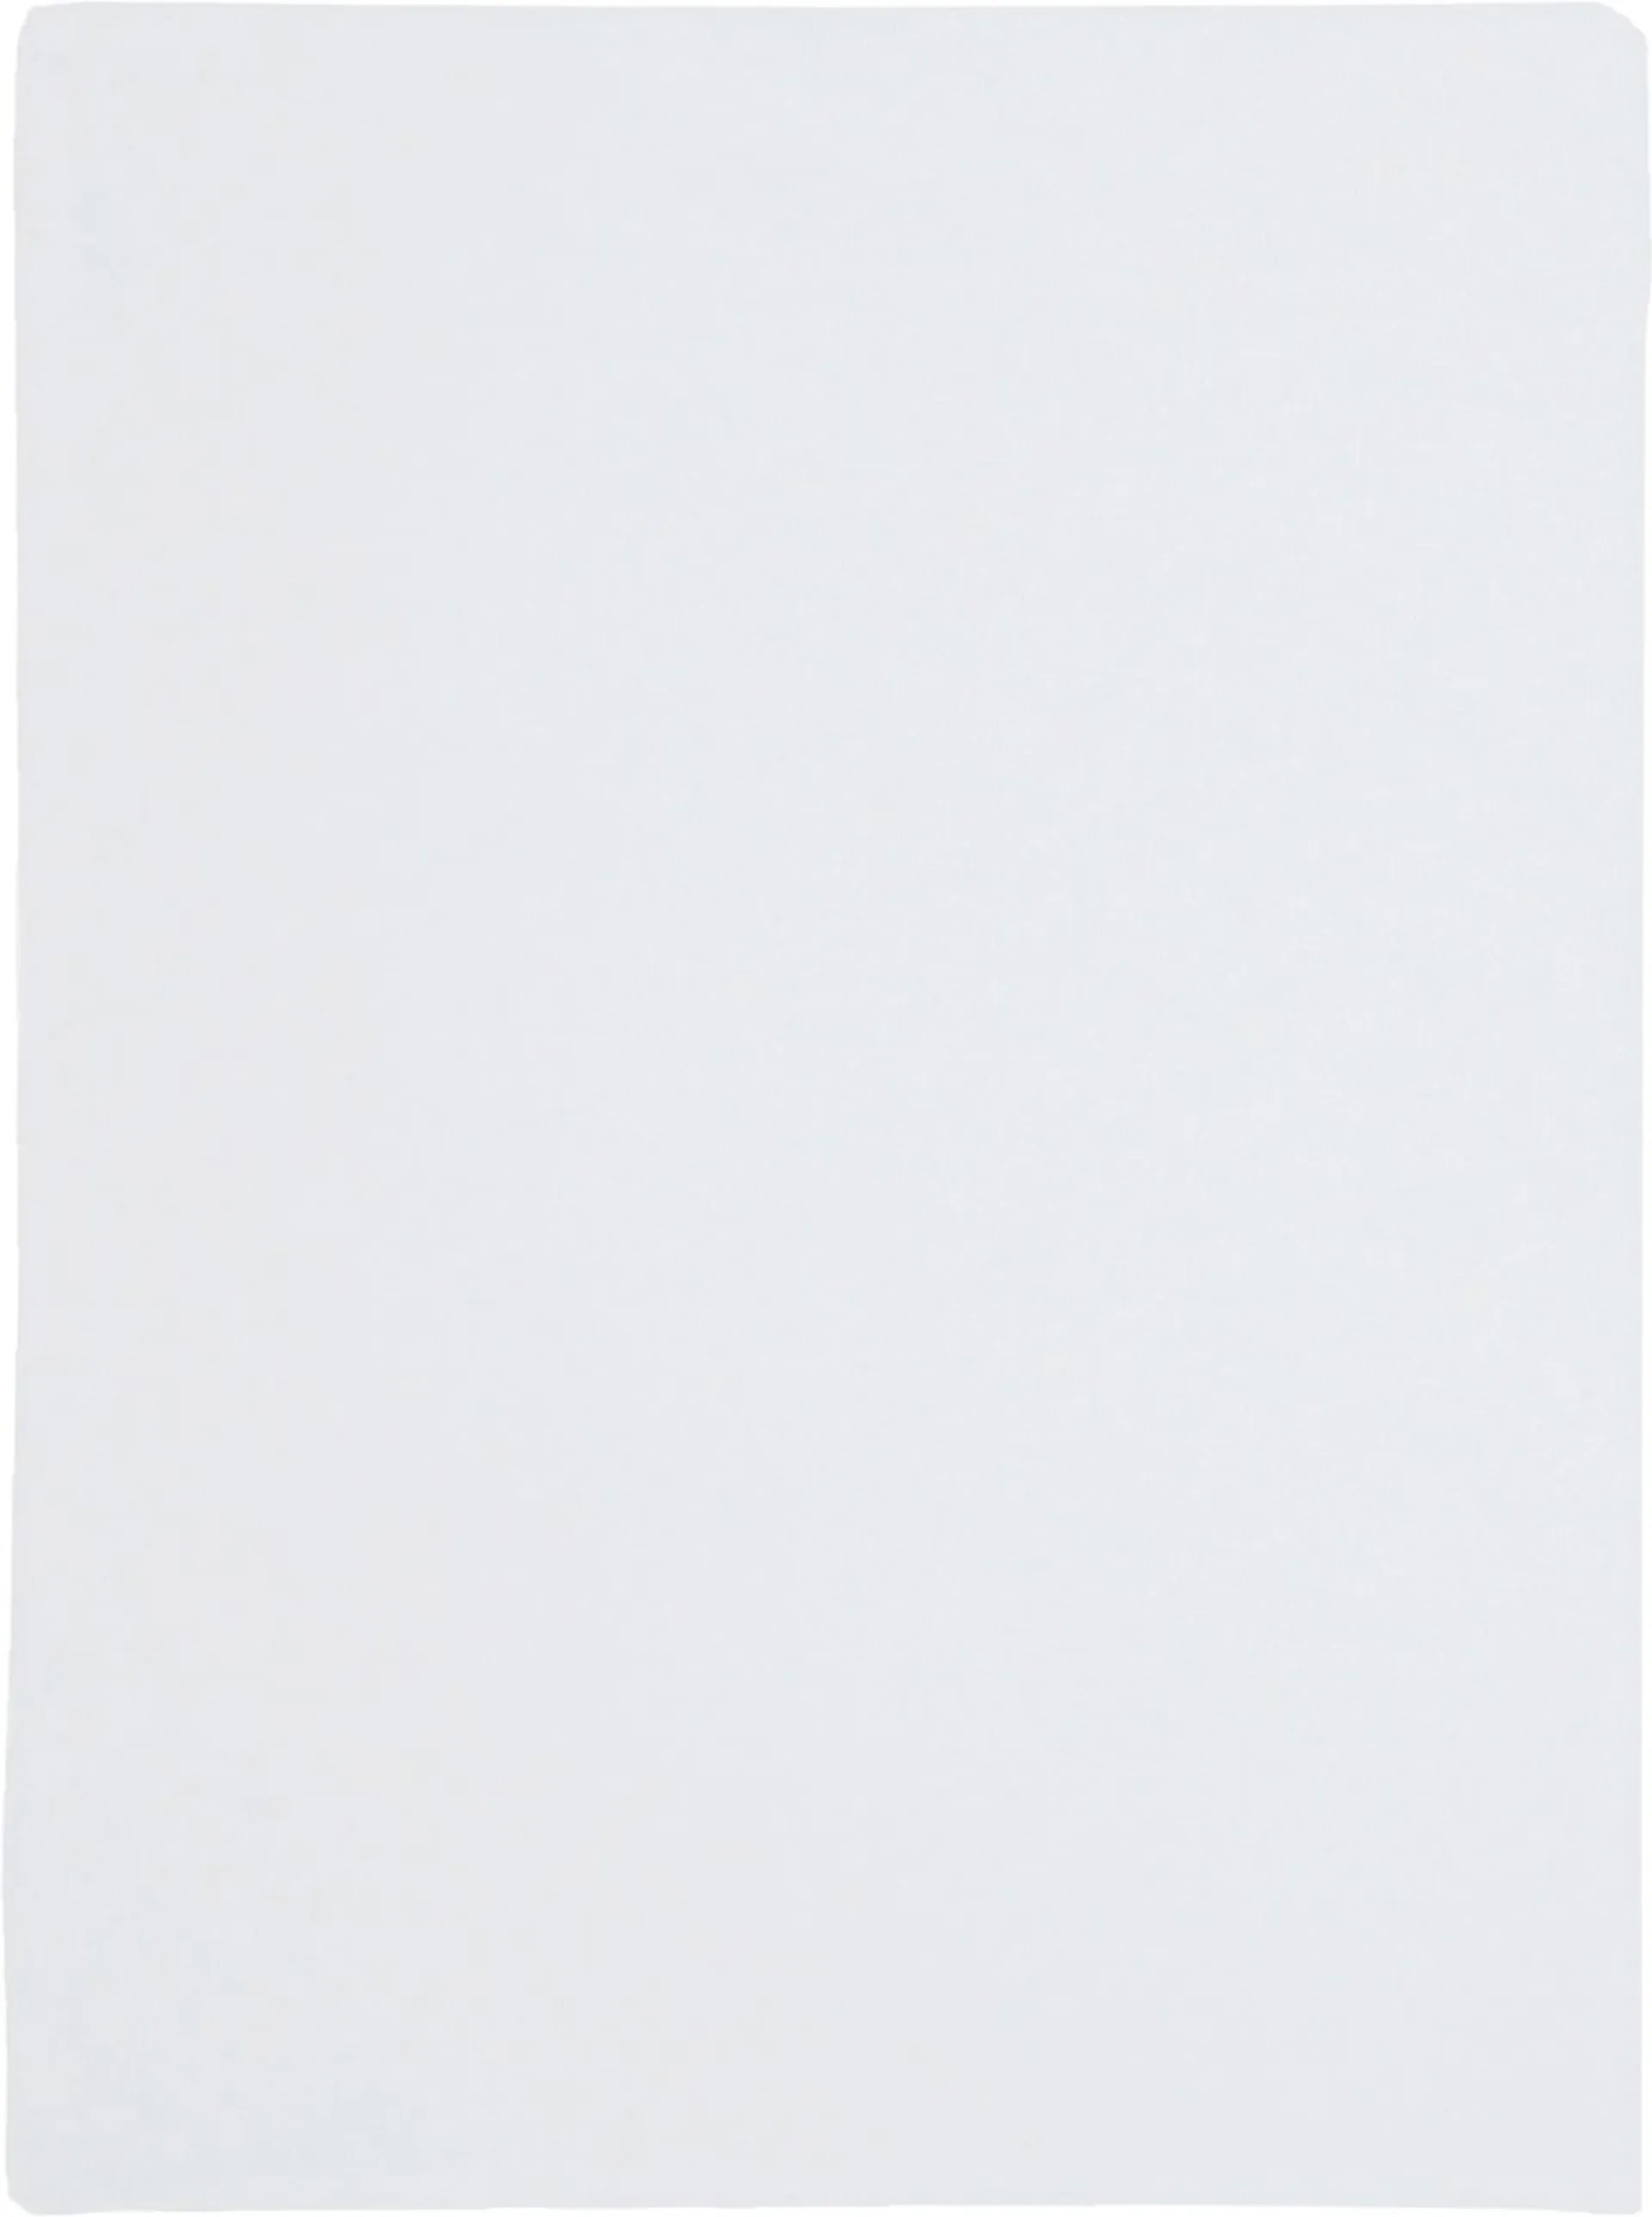 House patjansuoja 120 x 200 cm valkoinen